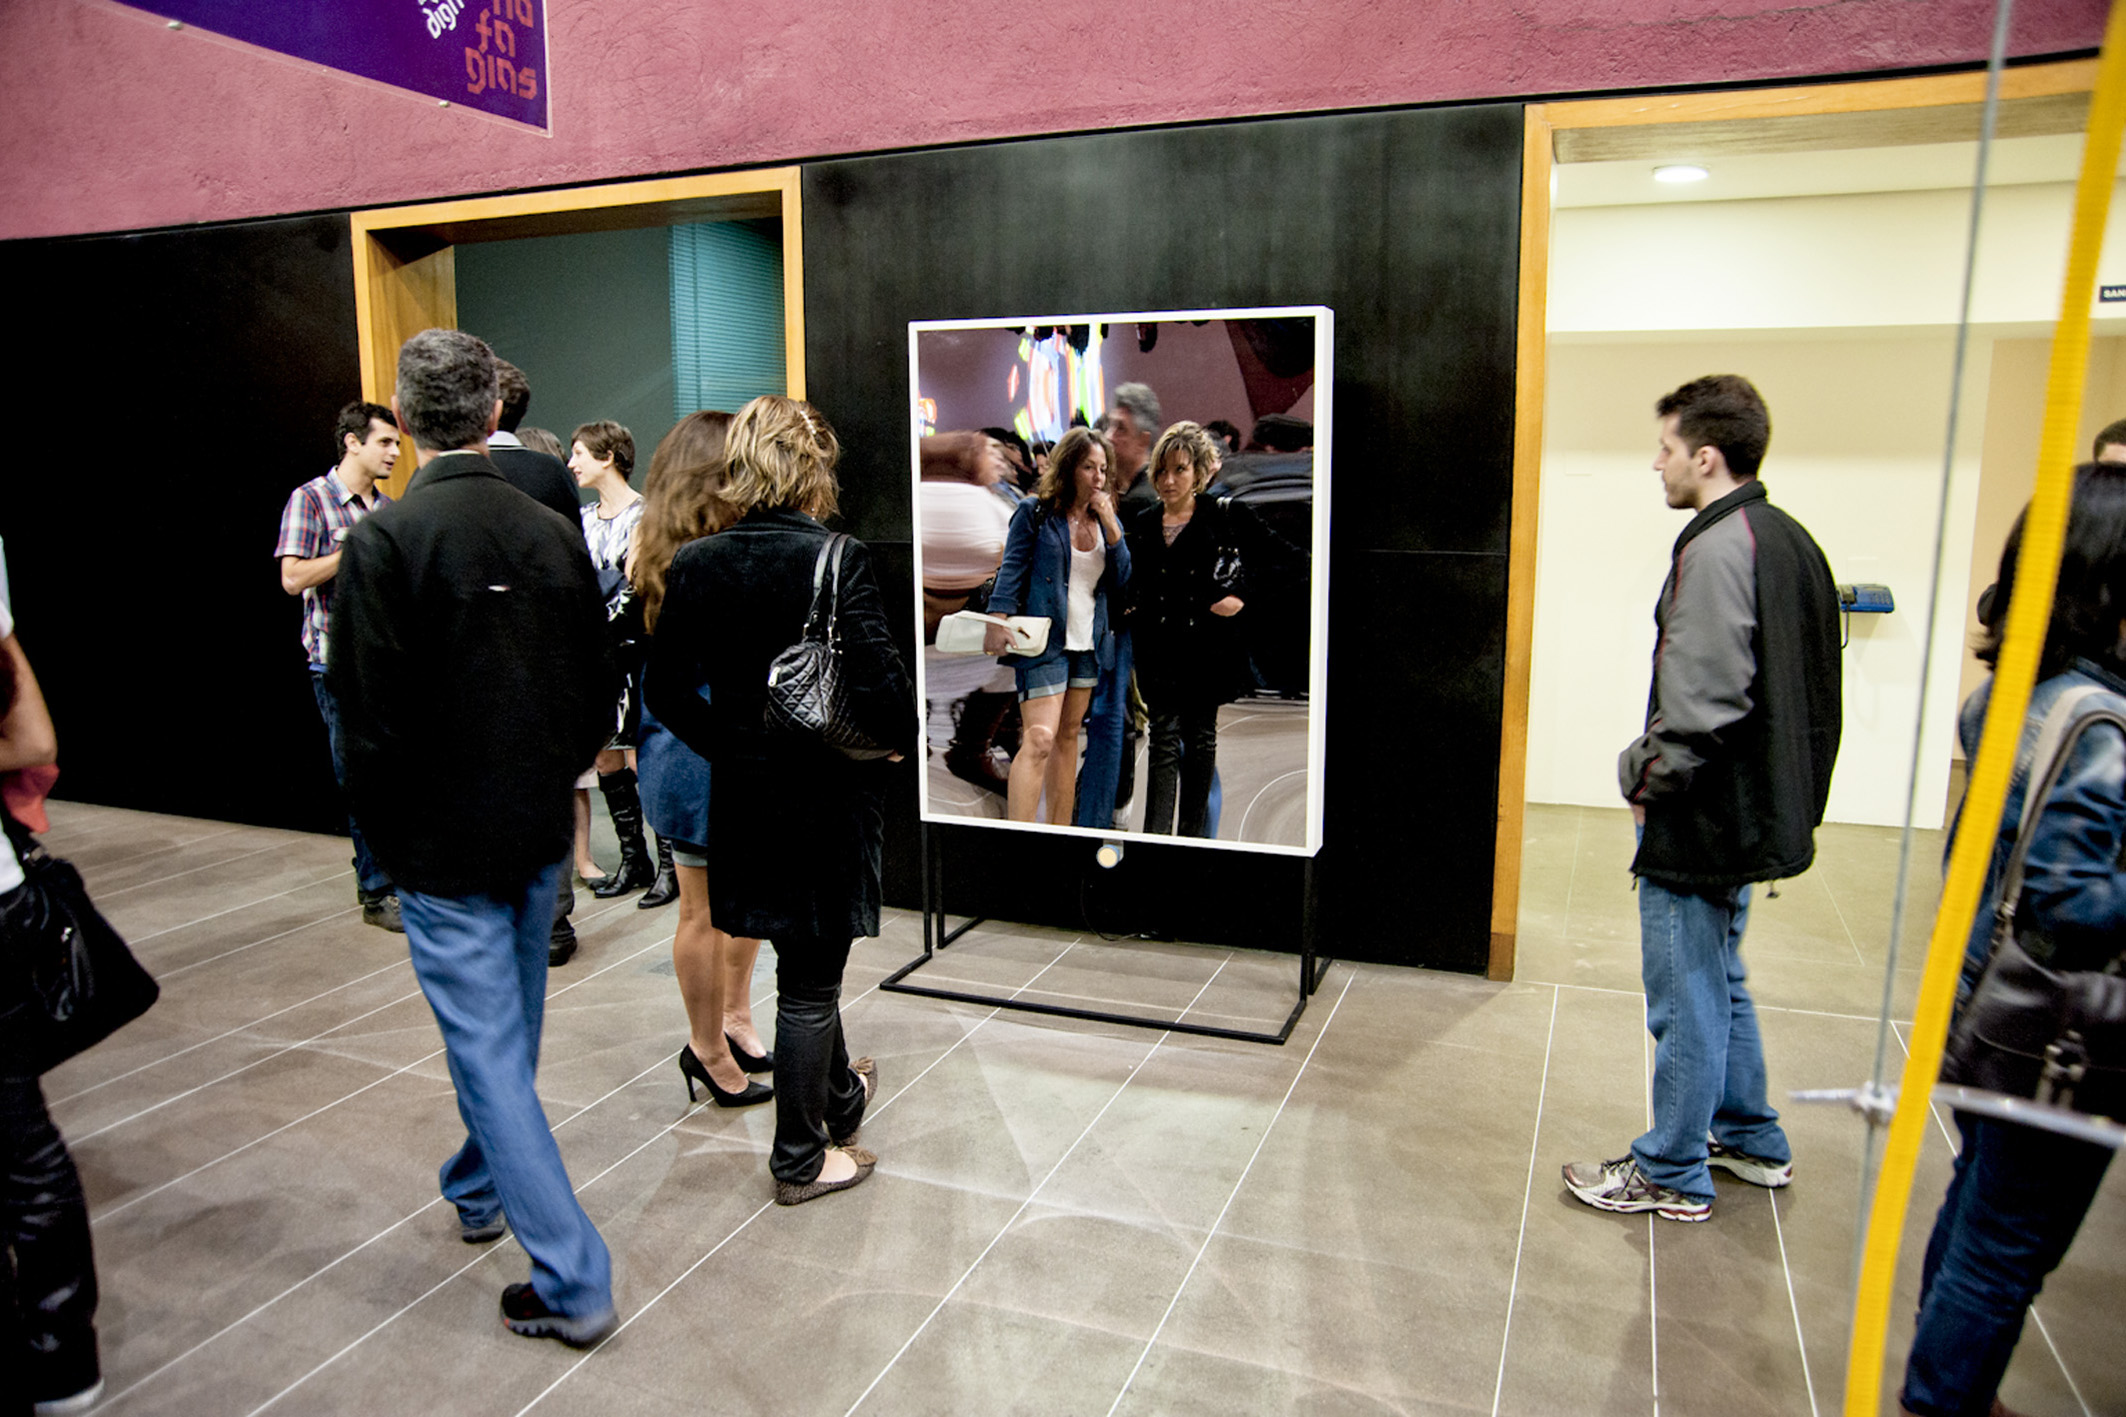    mirror | espelho    @ III mostra 3m 2012   + expo  